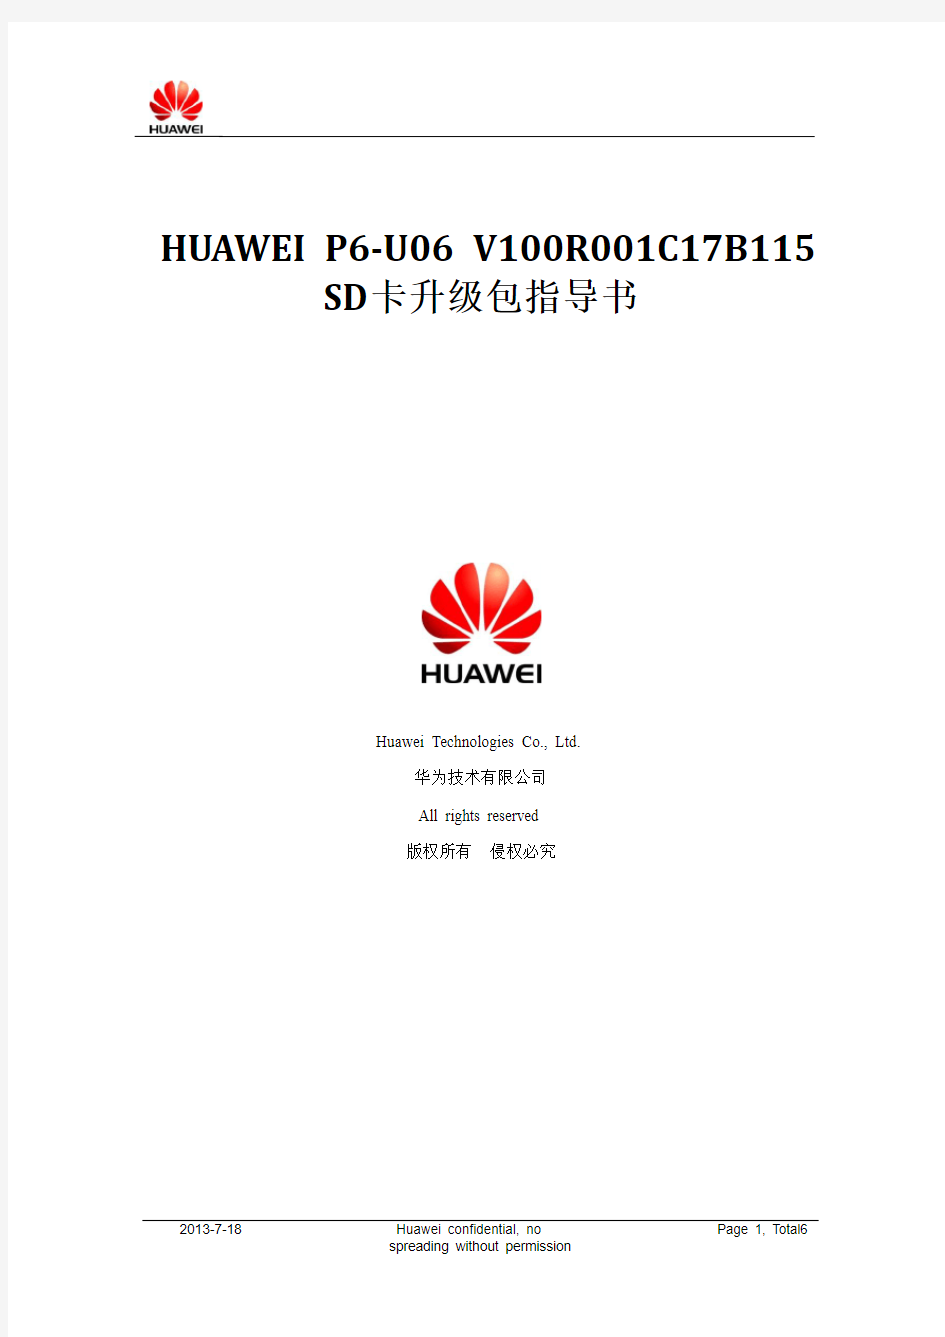 HUAWEI P6-U06 V100R001C17B115 SD卡升级包指导书